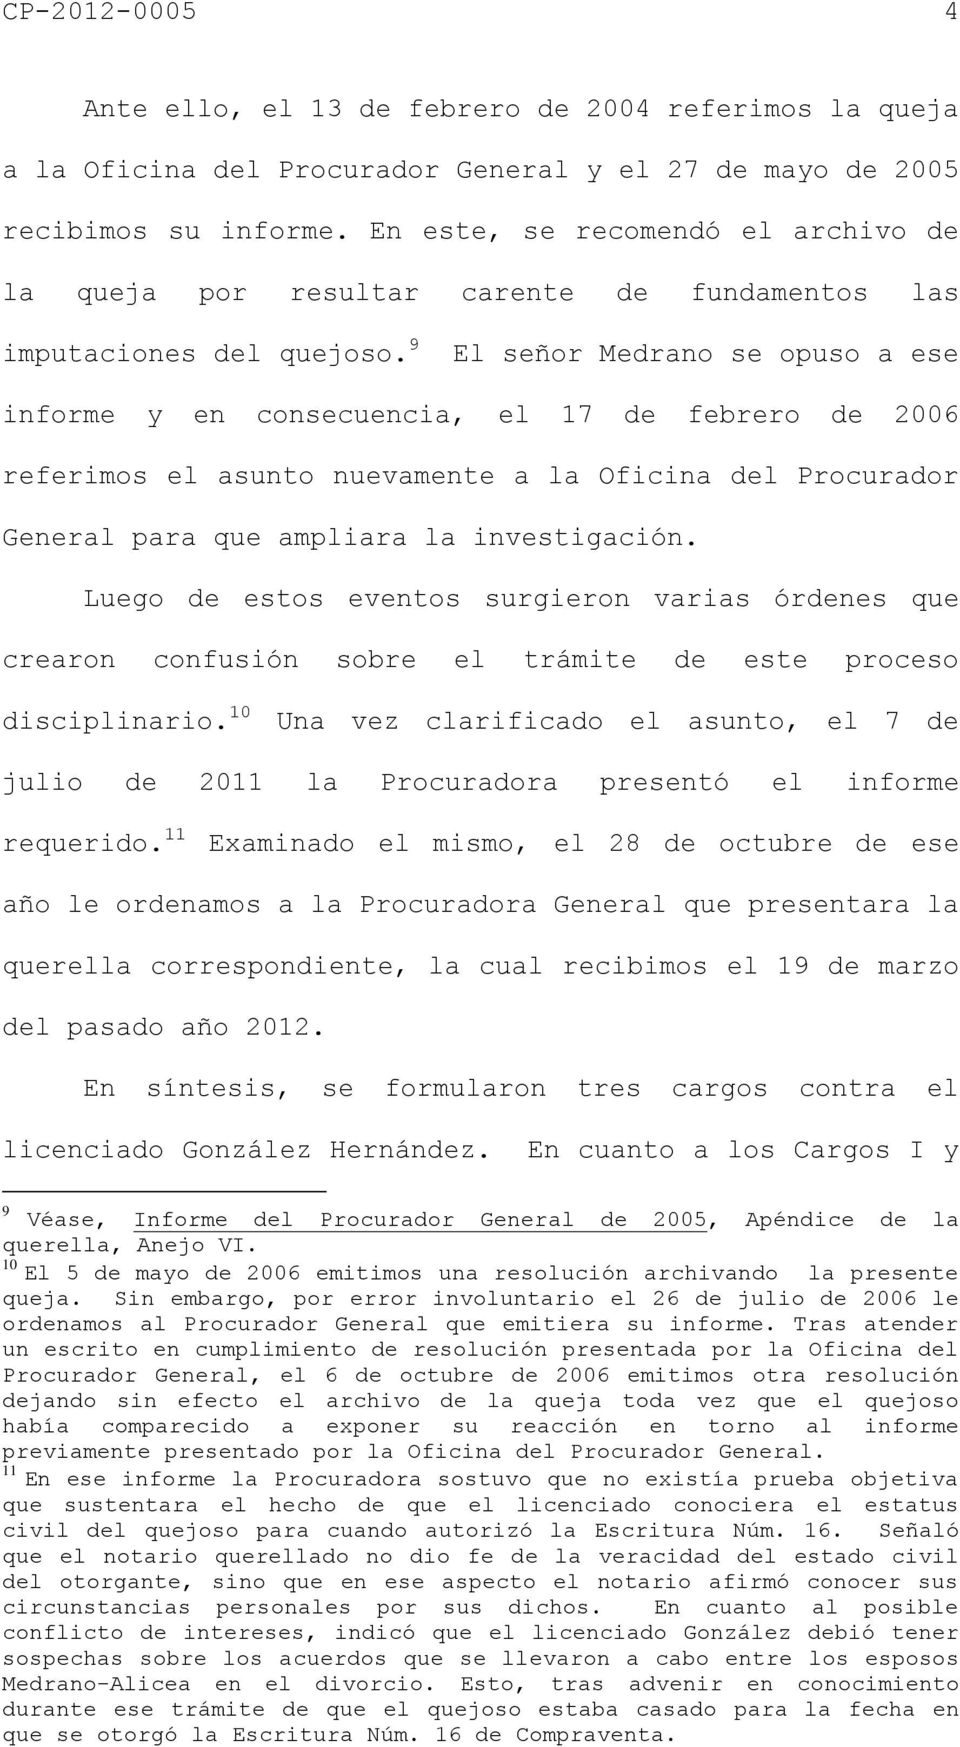 9 El señor Medrano se opuso a ese informe y en consecuencia, el 17 de febrero de 2006 referimos el asunto nuevamente a la Oficina del Procurador General para que ampliara la investigación.